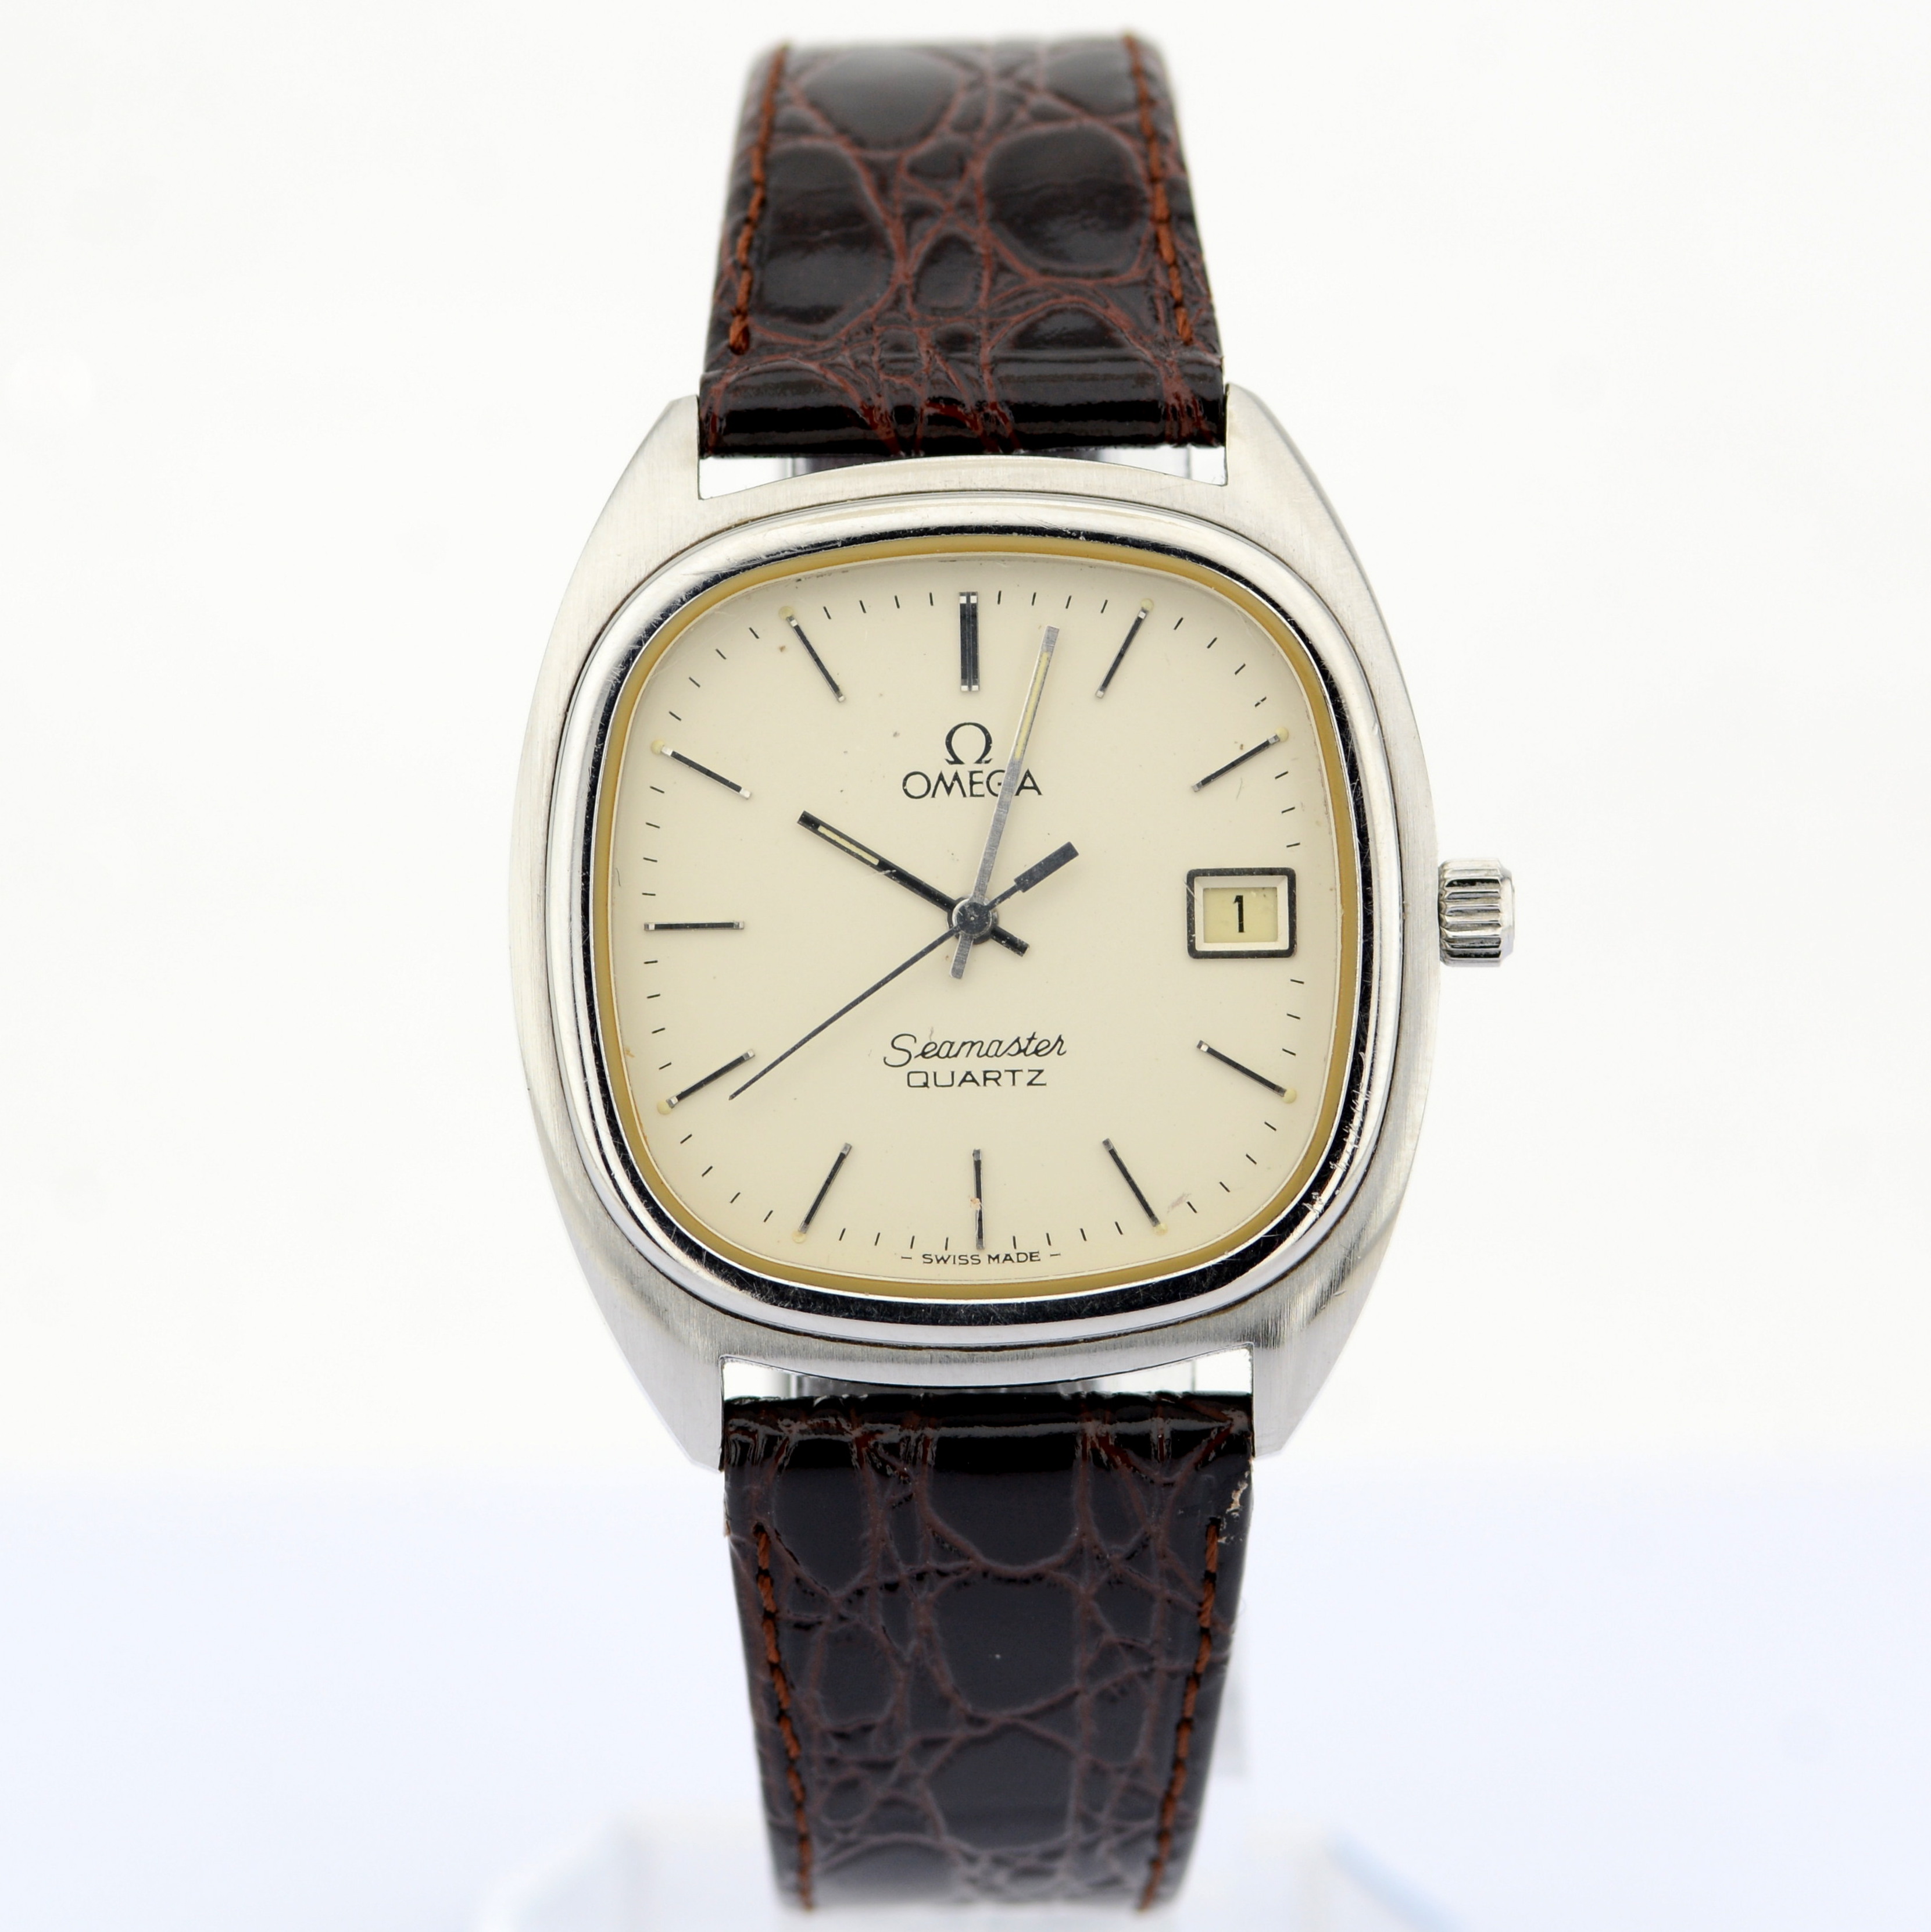 Omega / Seamaster Date 34 mm - Gentlmen's Steel Wrist Watch - Image 7 of 8